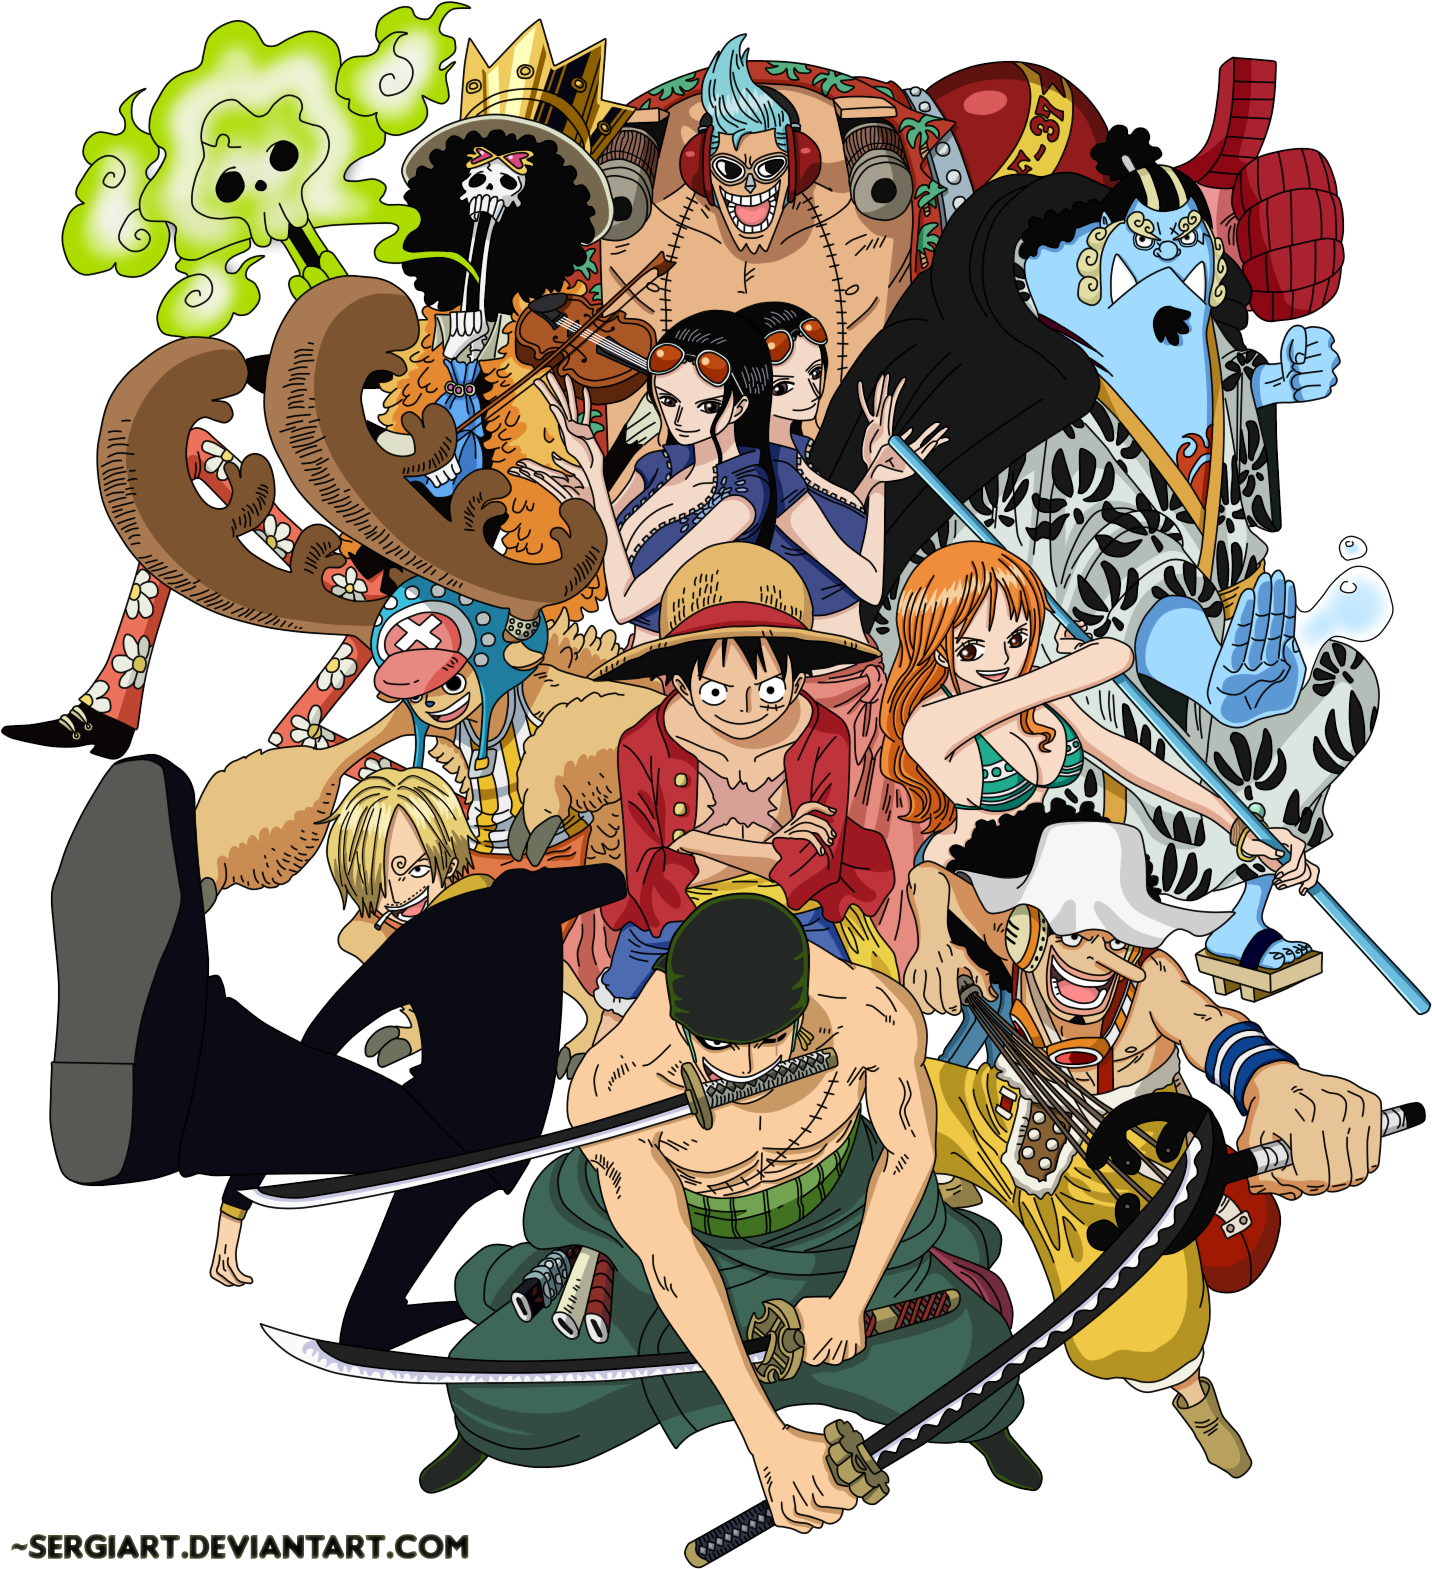 Băng Mũ Rơm là một trong những băng hiệp sĩ hải tặc được yêu thích và nổi tiếng trong loạt truyện One Piece. Với các đặc biệt nhân vật như Luffy, Zoro, Sanji và Nami, băng Mũ Rơm đã cùng nhau làm nên nhiều chiến công trong hành trình tìm kho báu One Piece. Hãy cùng xem ảnh về băng Mũ Rơm để khám phá thêm nhiều chi tiết ấn tượng về loạt truyện này.